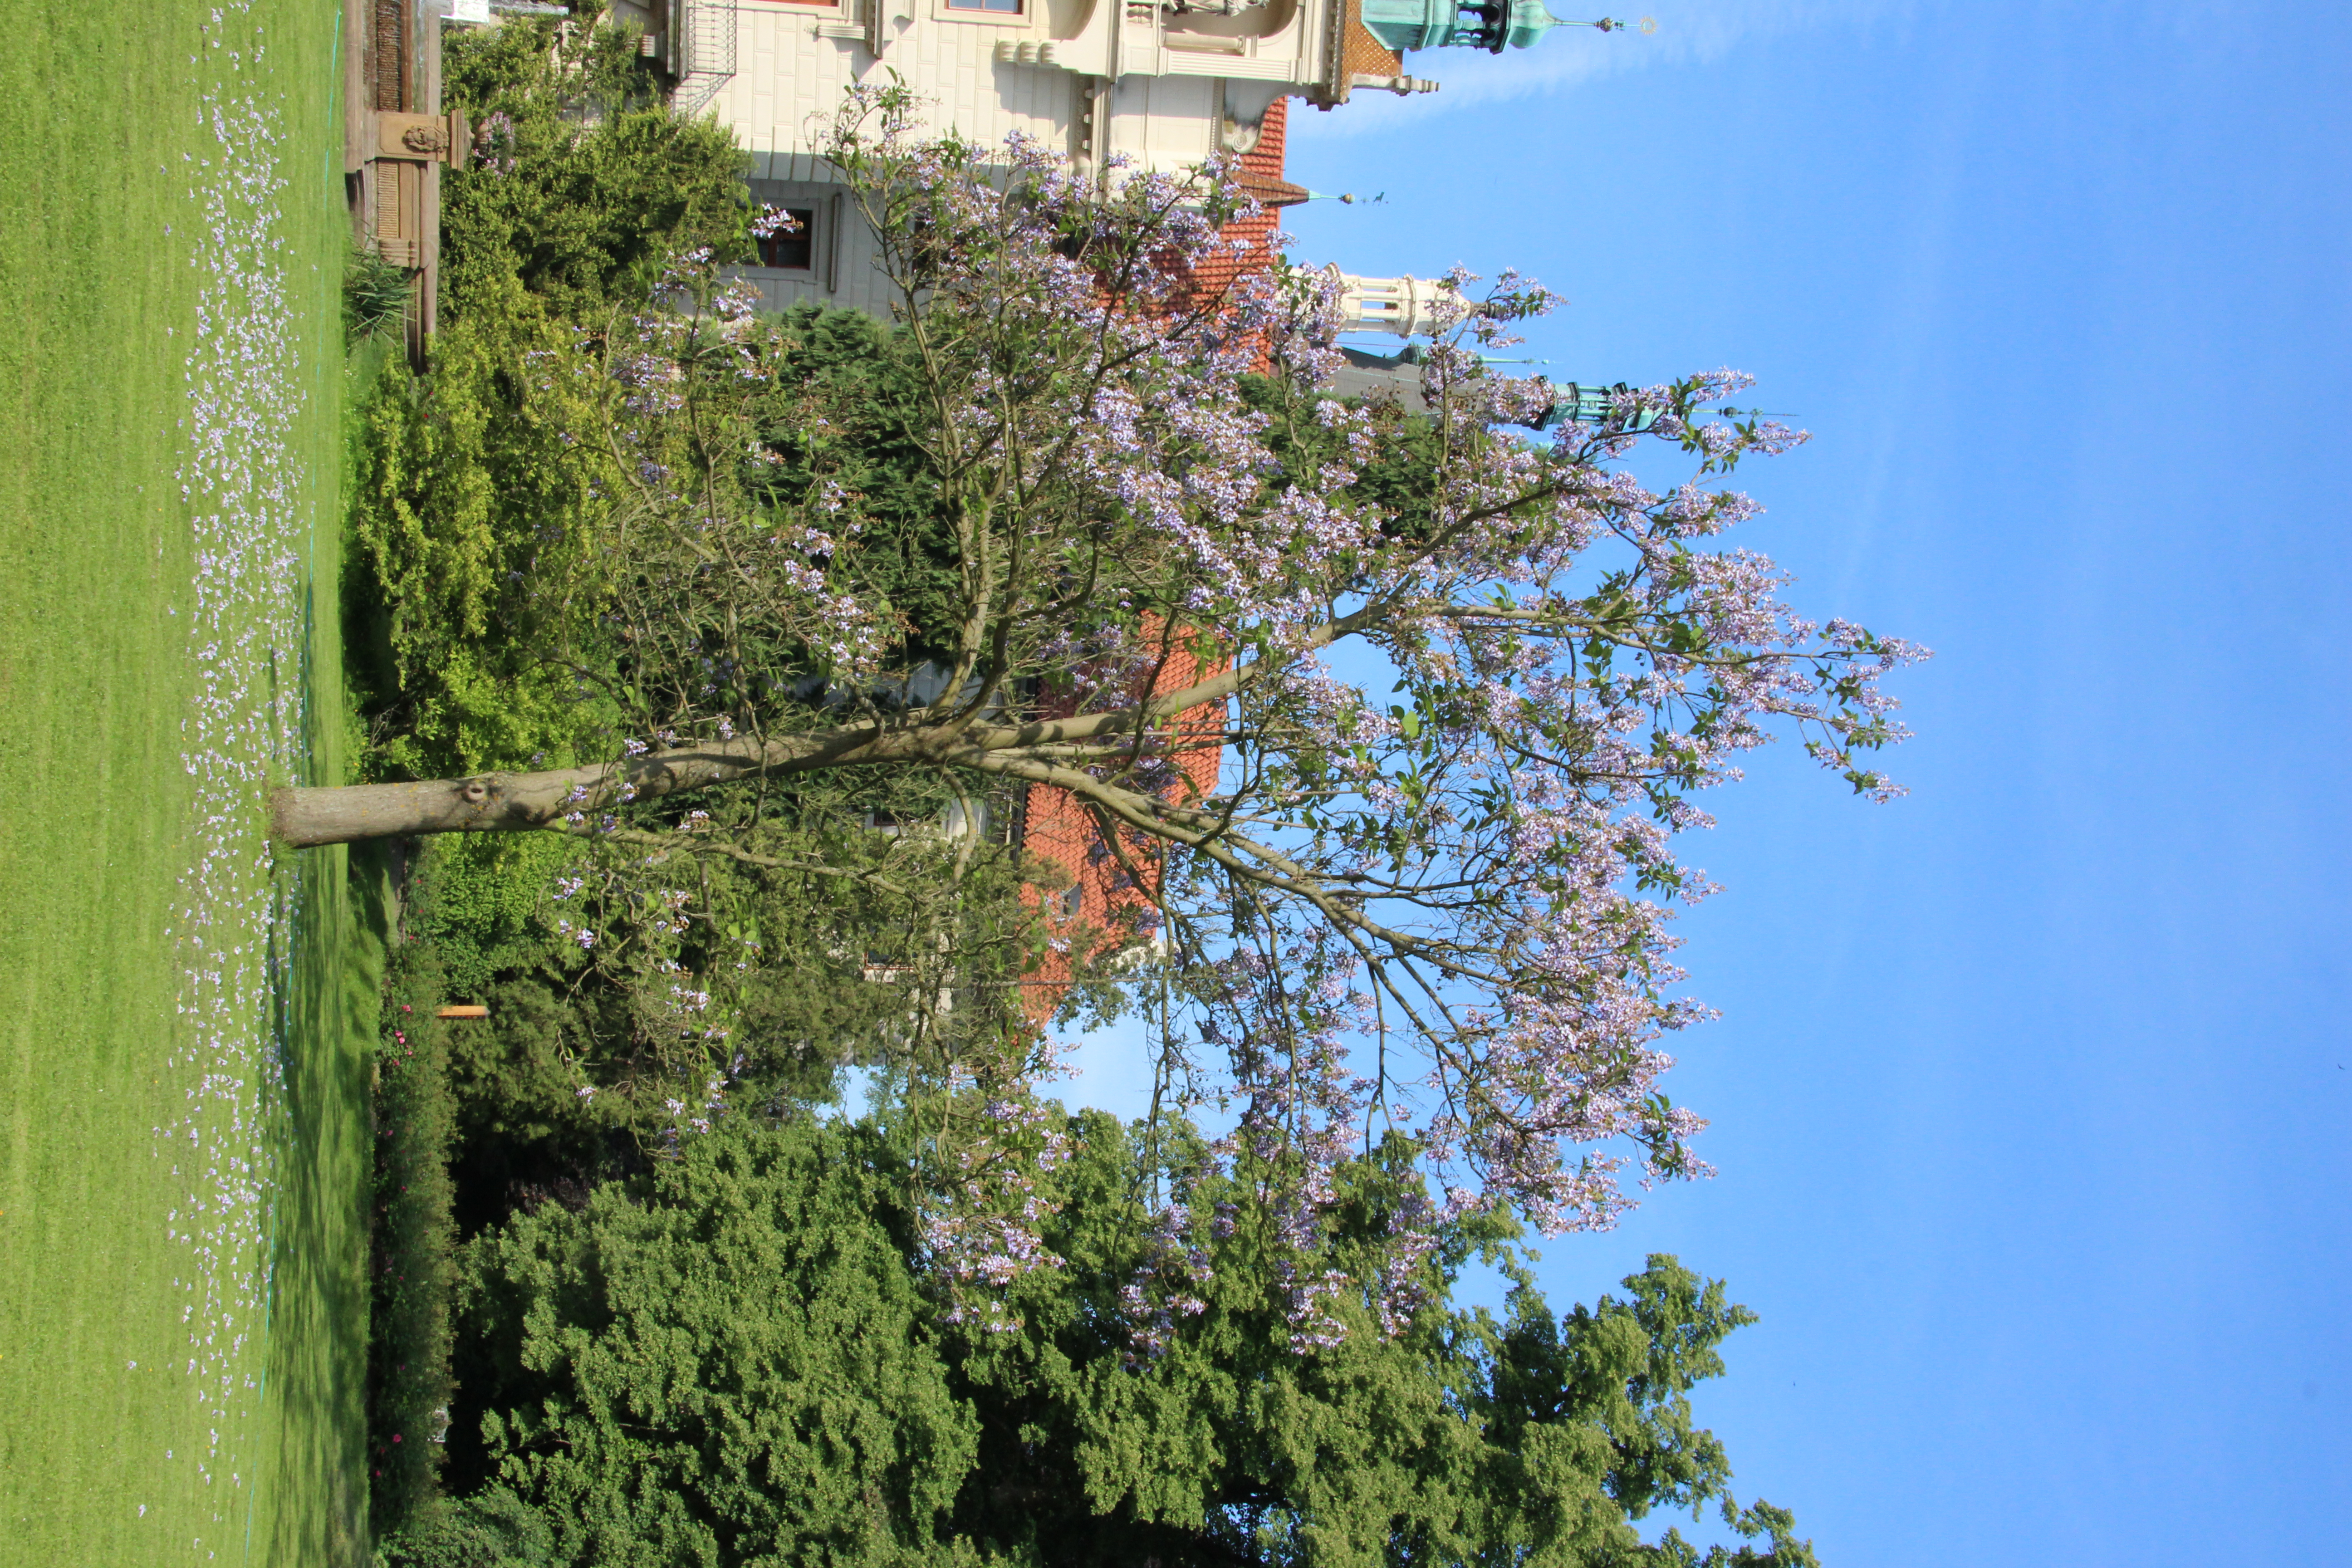 Pavlovnie byly introdukovány jako dekorativní stromy do mnoha parků. V posledních letech se můžeme setkat s tím, že v teplých oblastech začíná zplaňovat. Foto Jan Pergl